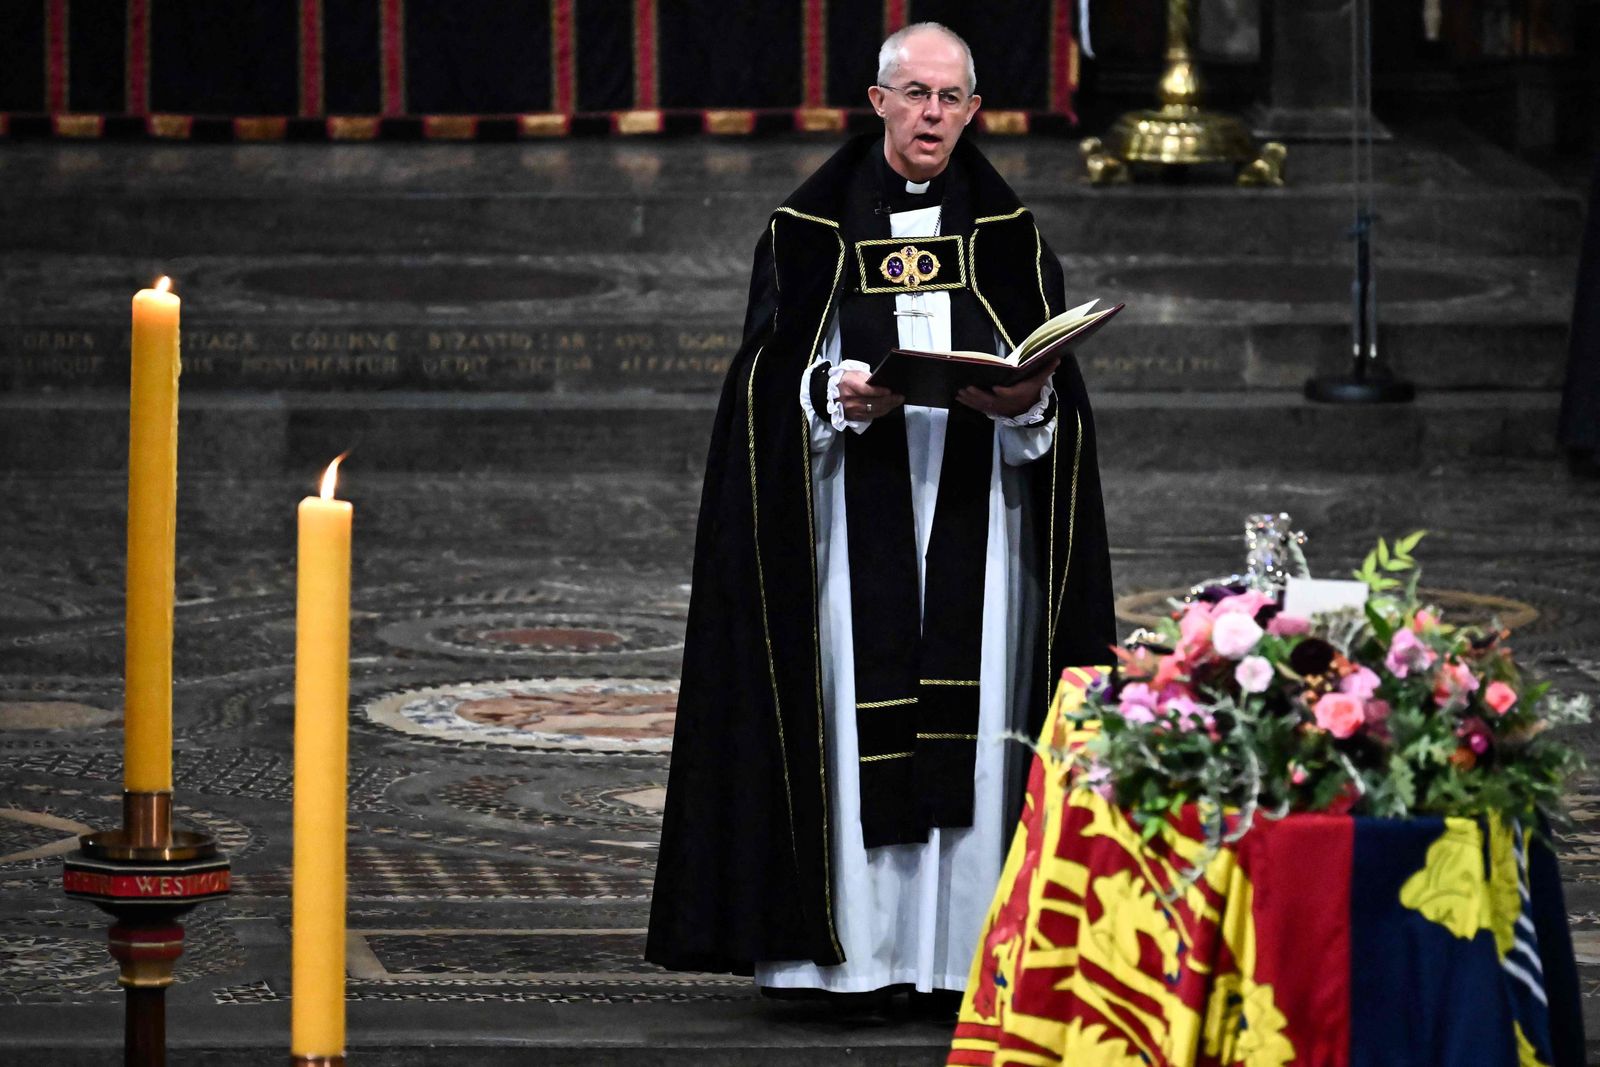 رئيس أساقفة كانتربري جاستن ويلبي يلقي كلمة في جنازة الملكة إليزابيث الثانية في كنيسة وستمنستر بلندن- 19 سبتمبر 2022 - AFP